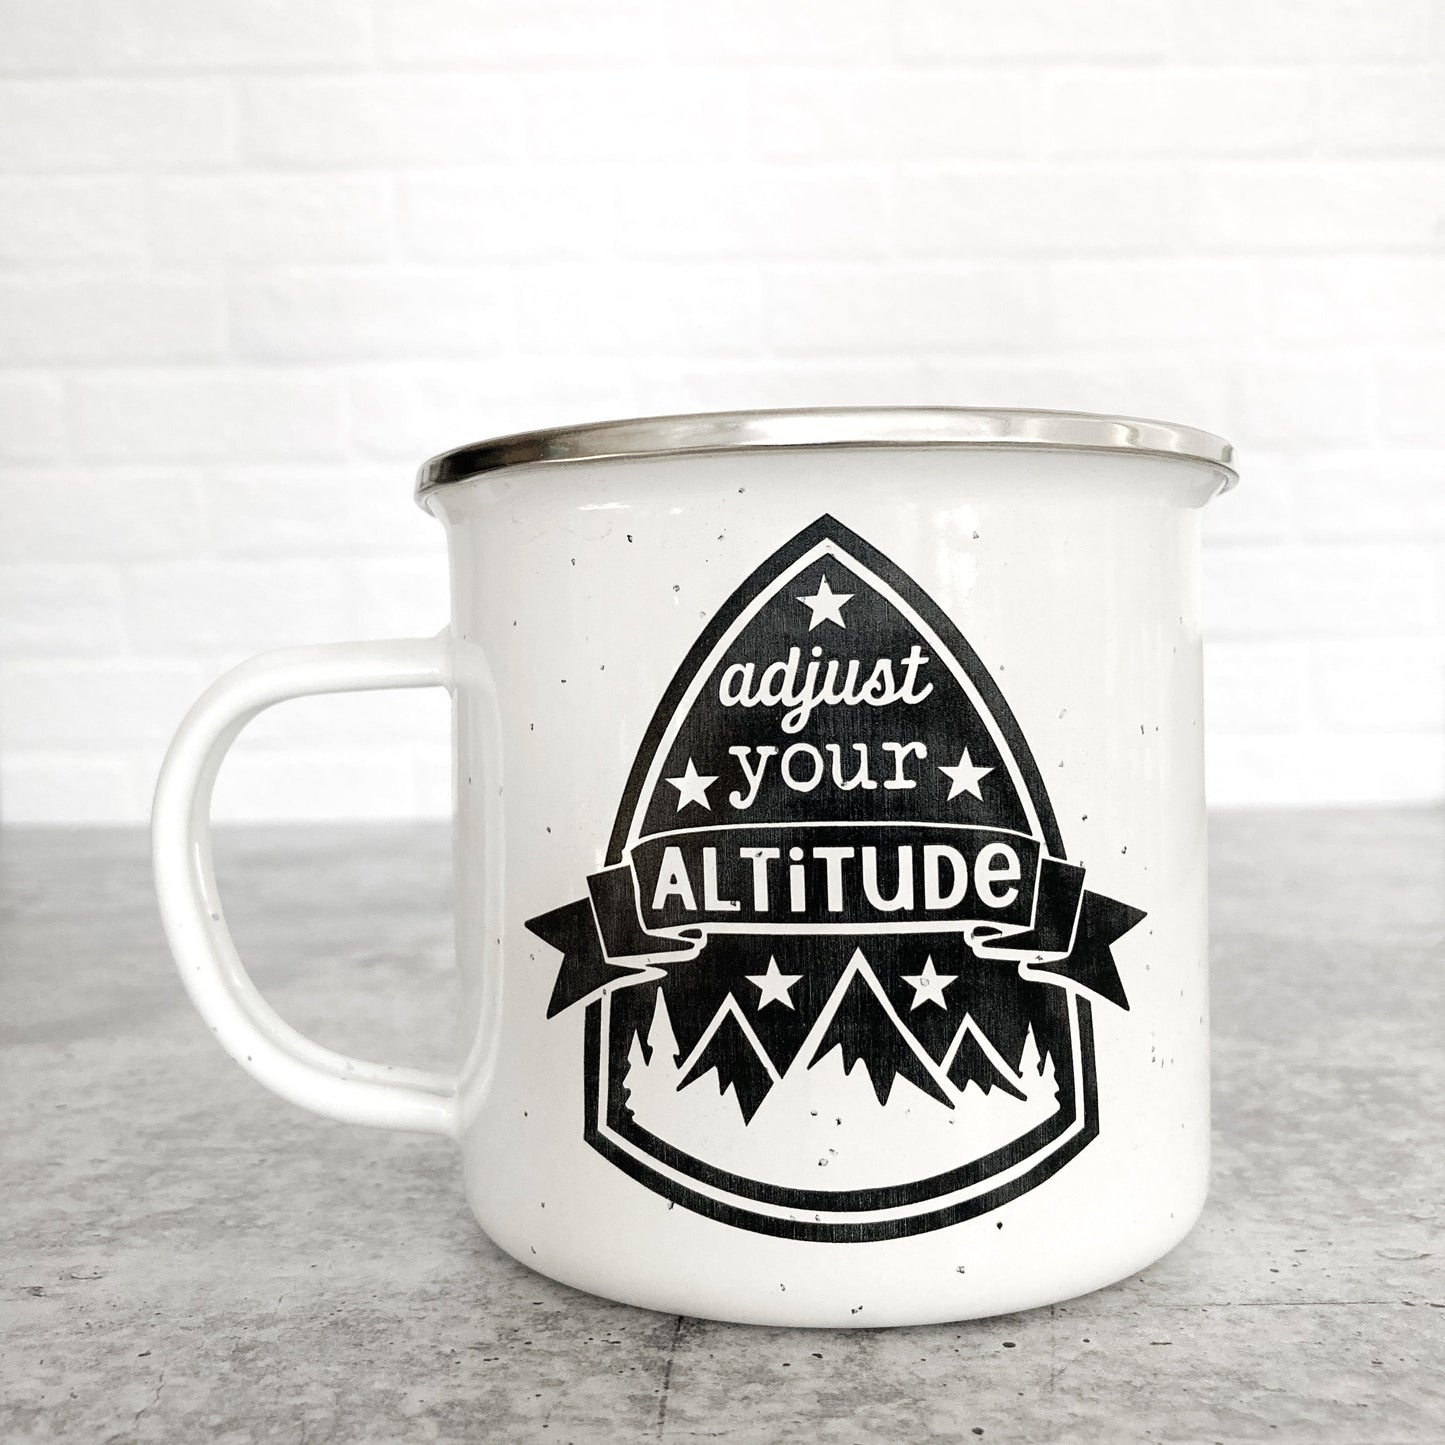 Adjust Your Altitude Design on a white enamel mug